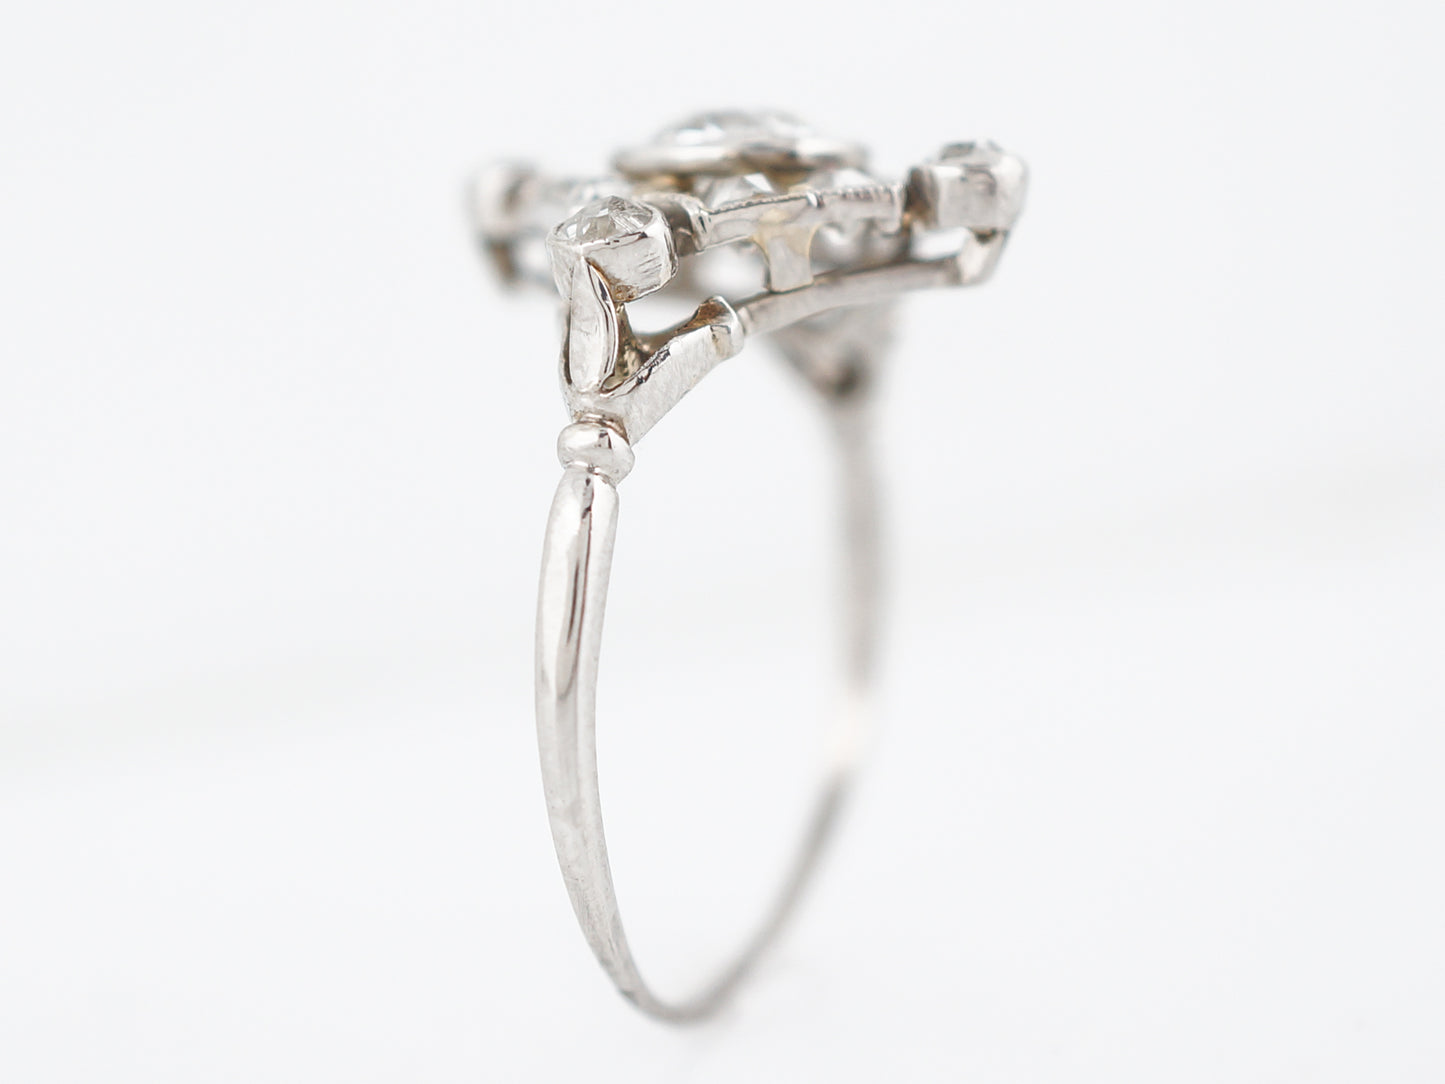 Antique Right Hand Ring Art Deco .66 Old European Cut Diamond in Platinum